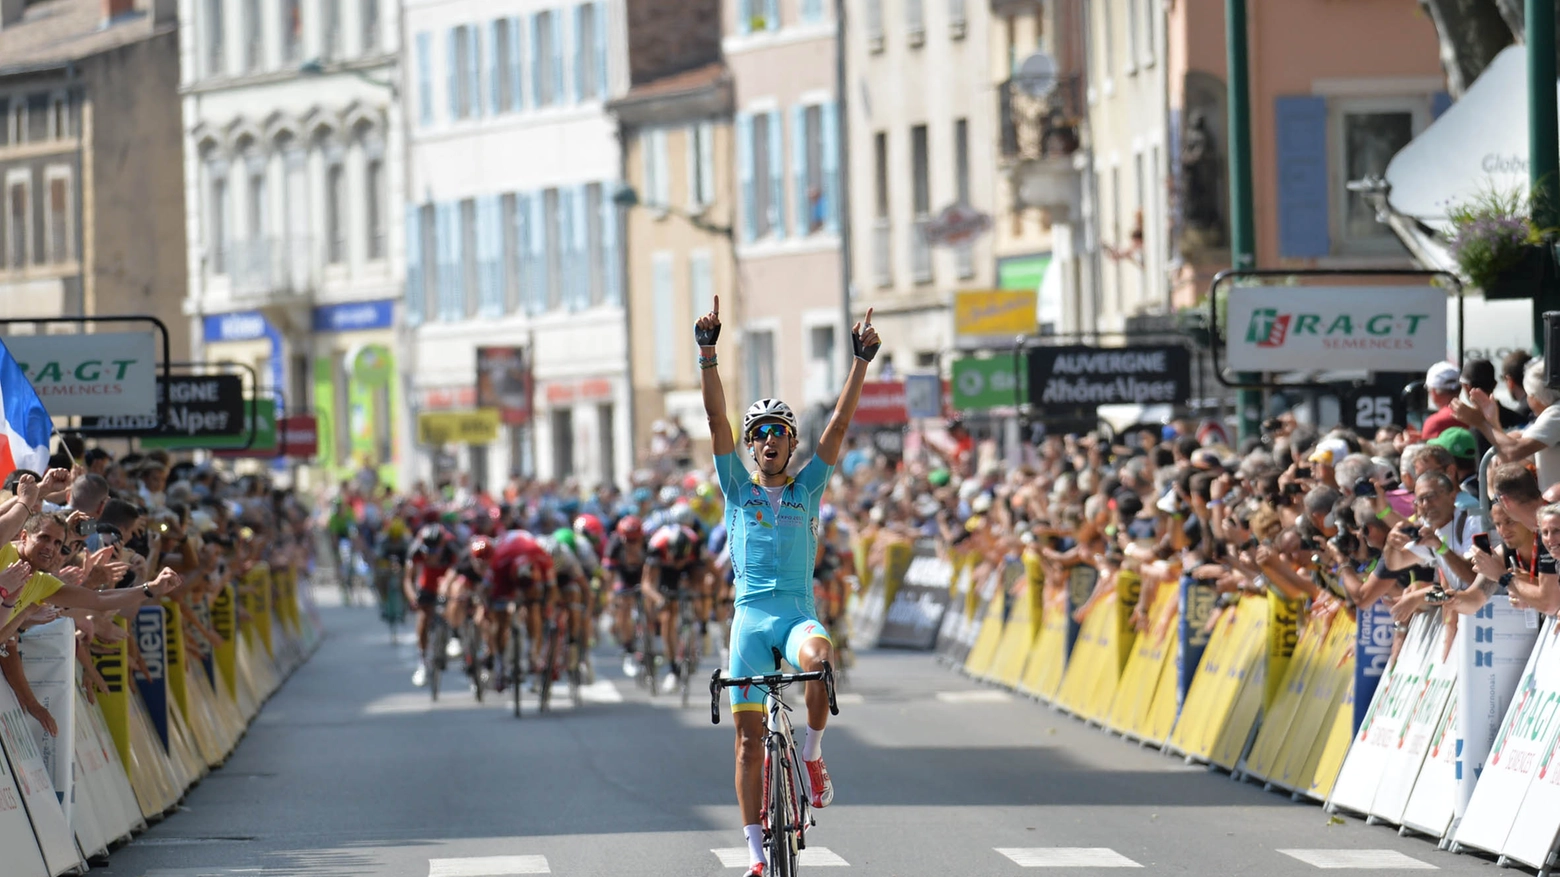 Aru trionfa al Giro del Delfinato (Alive)